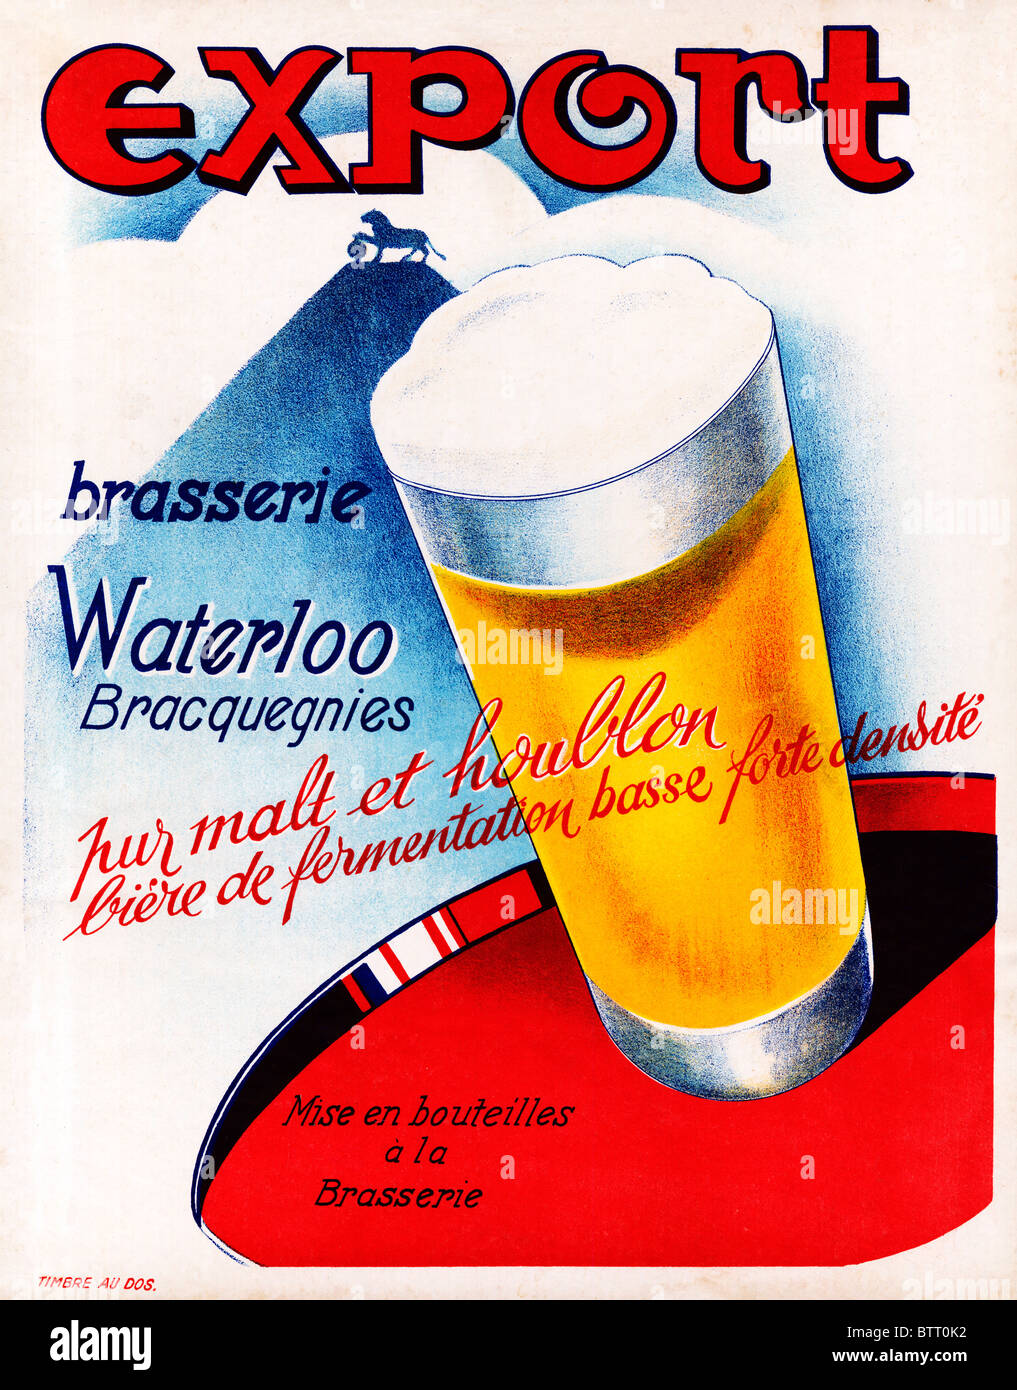 Esportazione di Waterloo la birra, la pubblicità per la birra da Waterloo Brasserie in Bracquegnies, Belgio Foto Stock